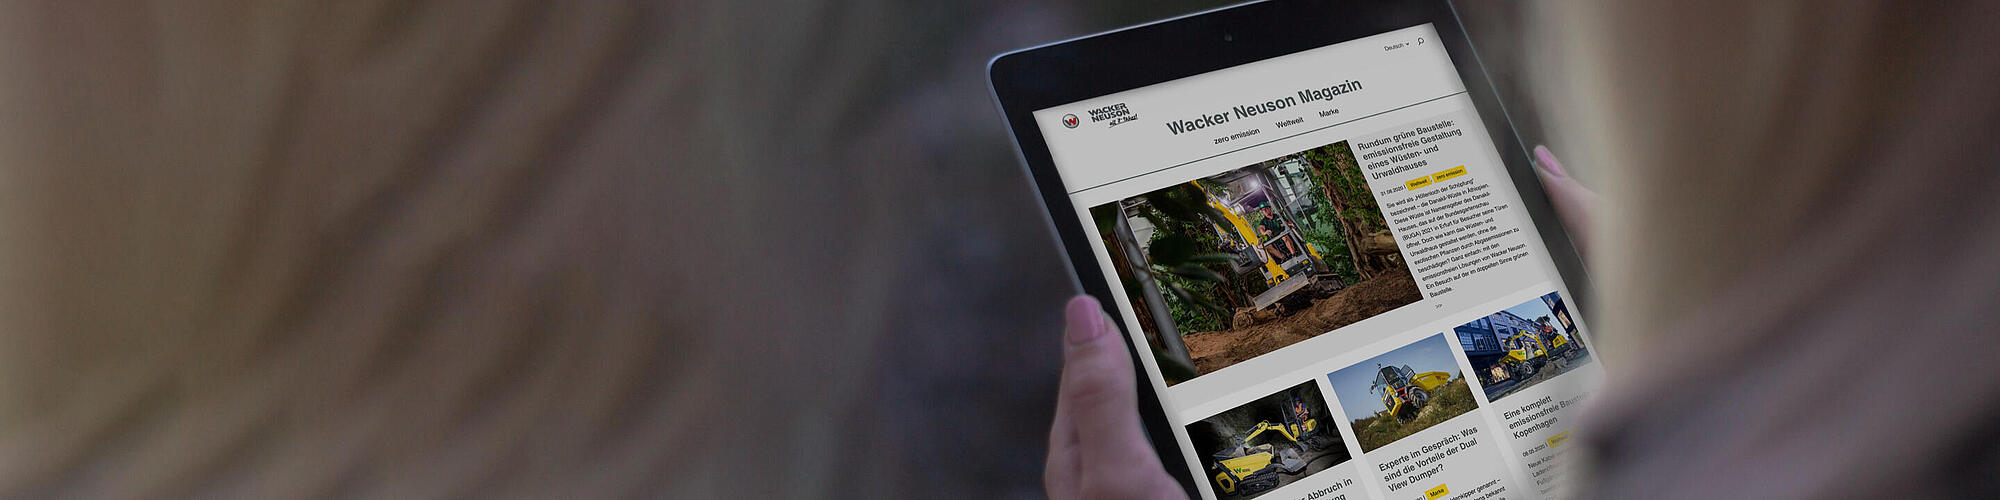 Wacker Neuson Online Magazin auf einem Tablet.